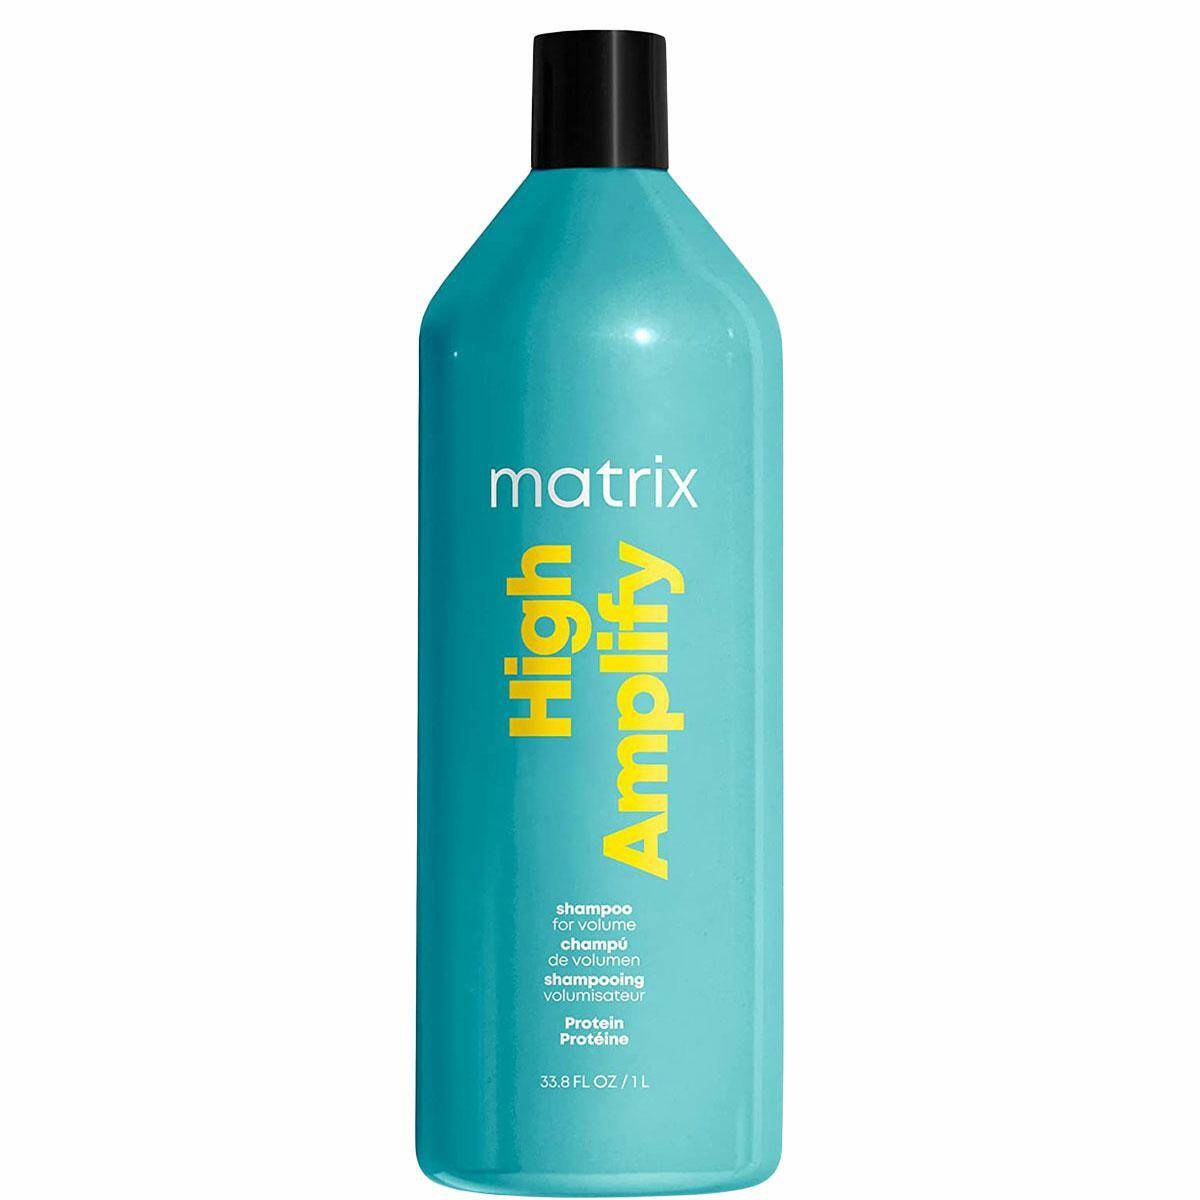 matrix szampon na objetosc